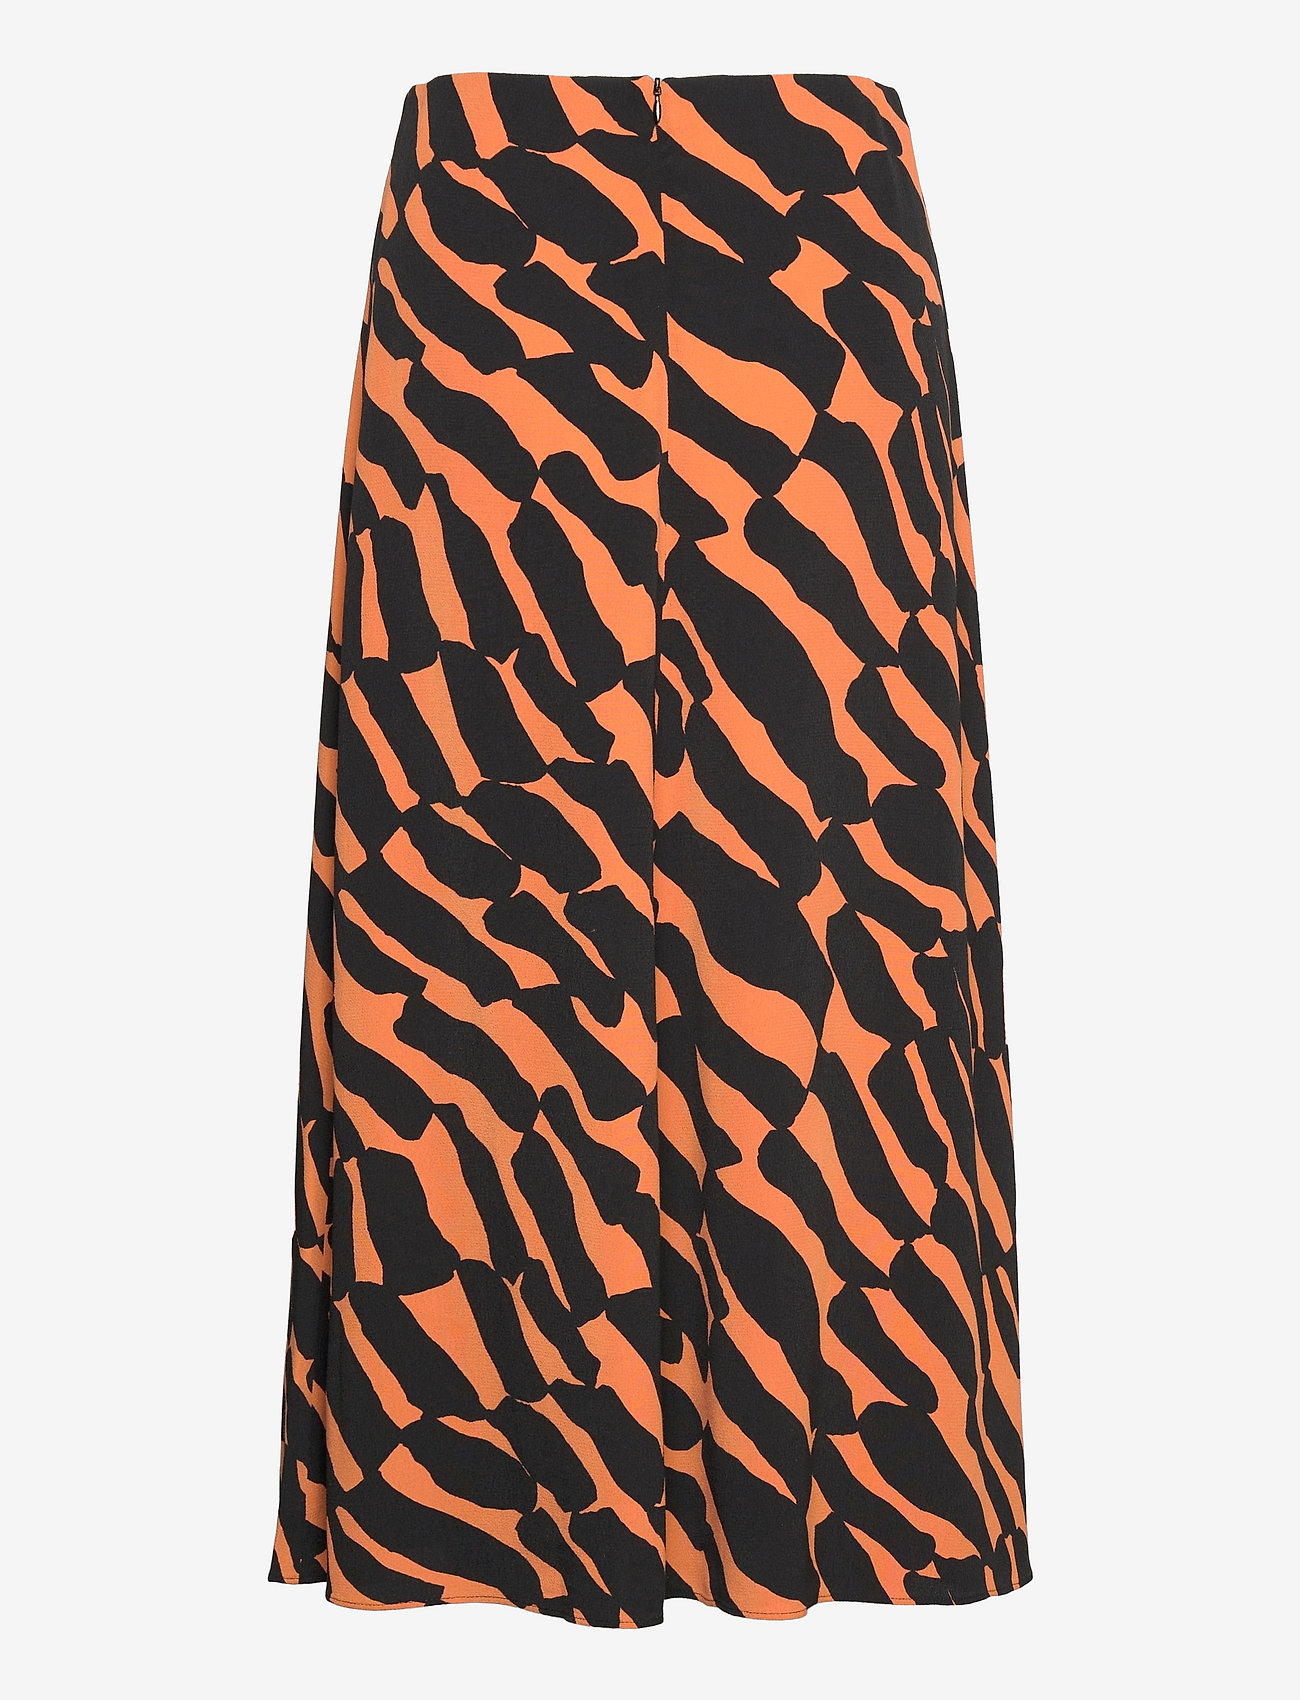 Marimekko AarnimetsÄ Kiikari Skirt (Brown, Black) - 1500 kr | Boozt.com